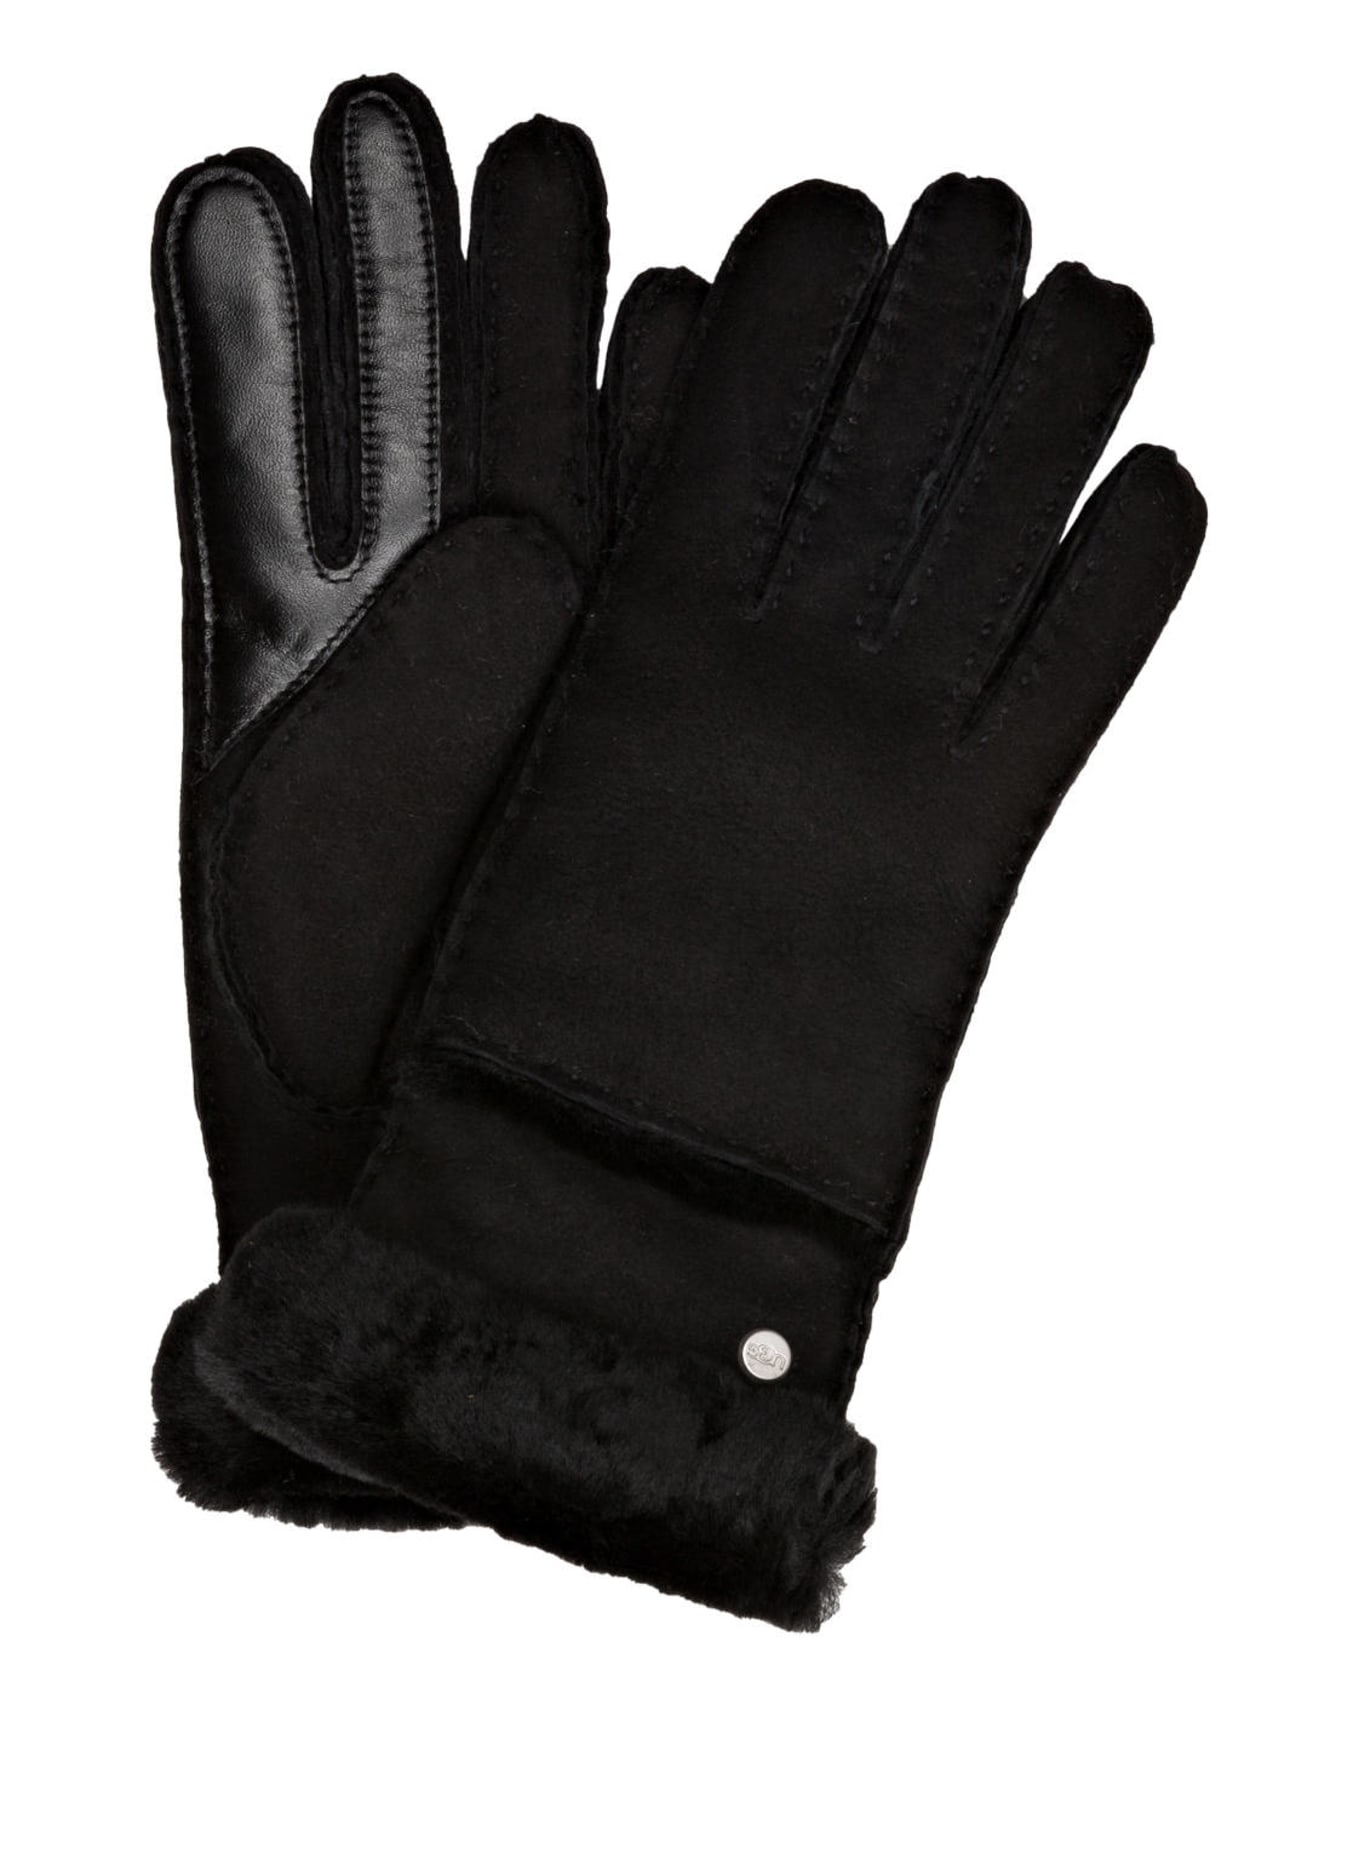 UGG Lederhandschuhe SEAMED TECH mit Echtfell und Touchscreen-Funktion, Farbe: SCHWARZ (Bild 1)